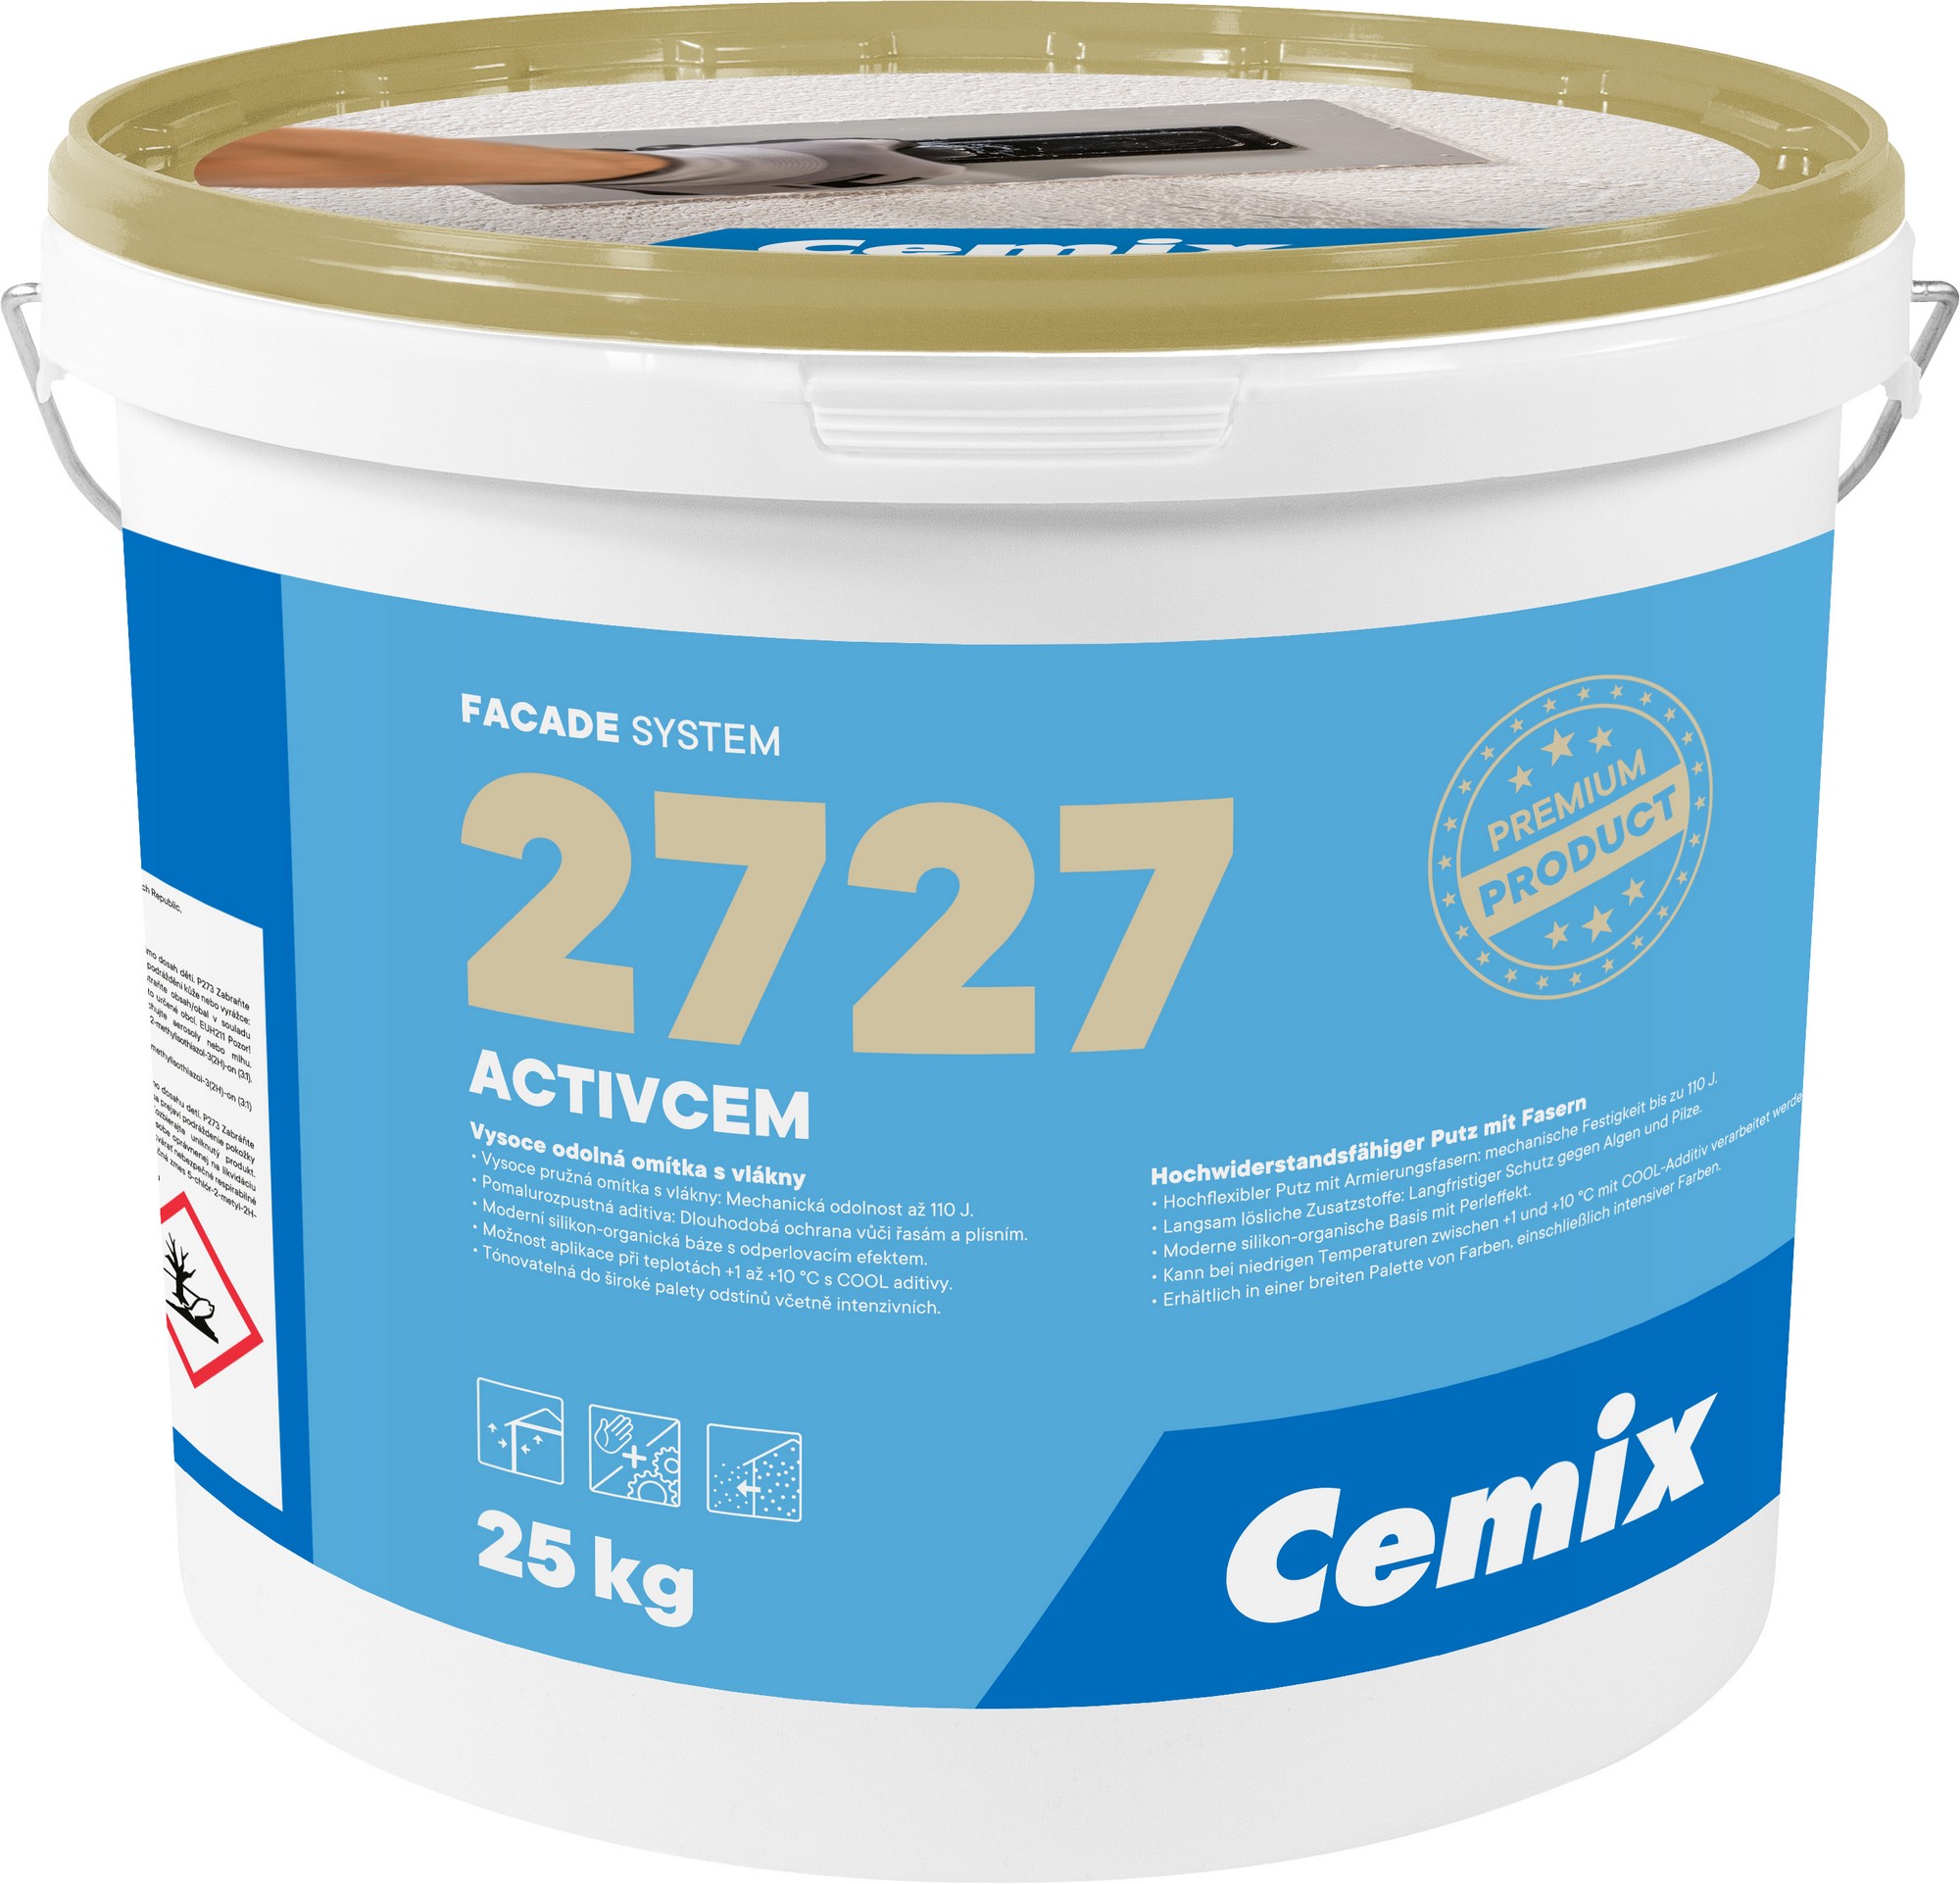 Omítka vysokopevnostní Cemix 2727 ActivCem R 2,0 mm bezpř., 25 kg